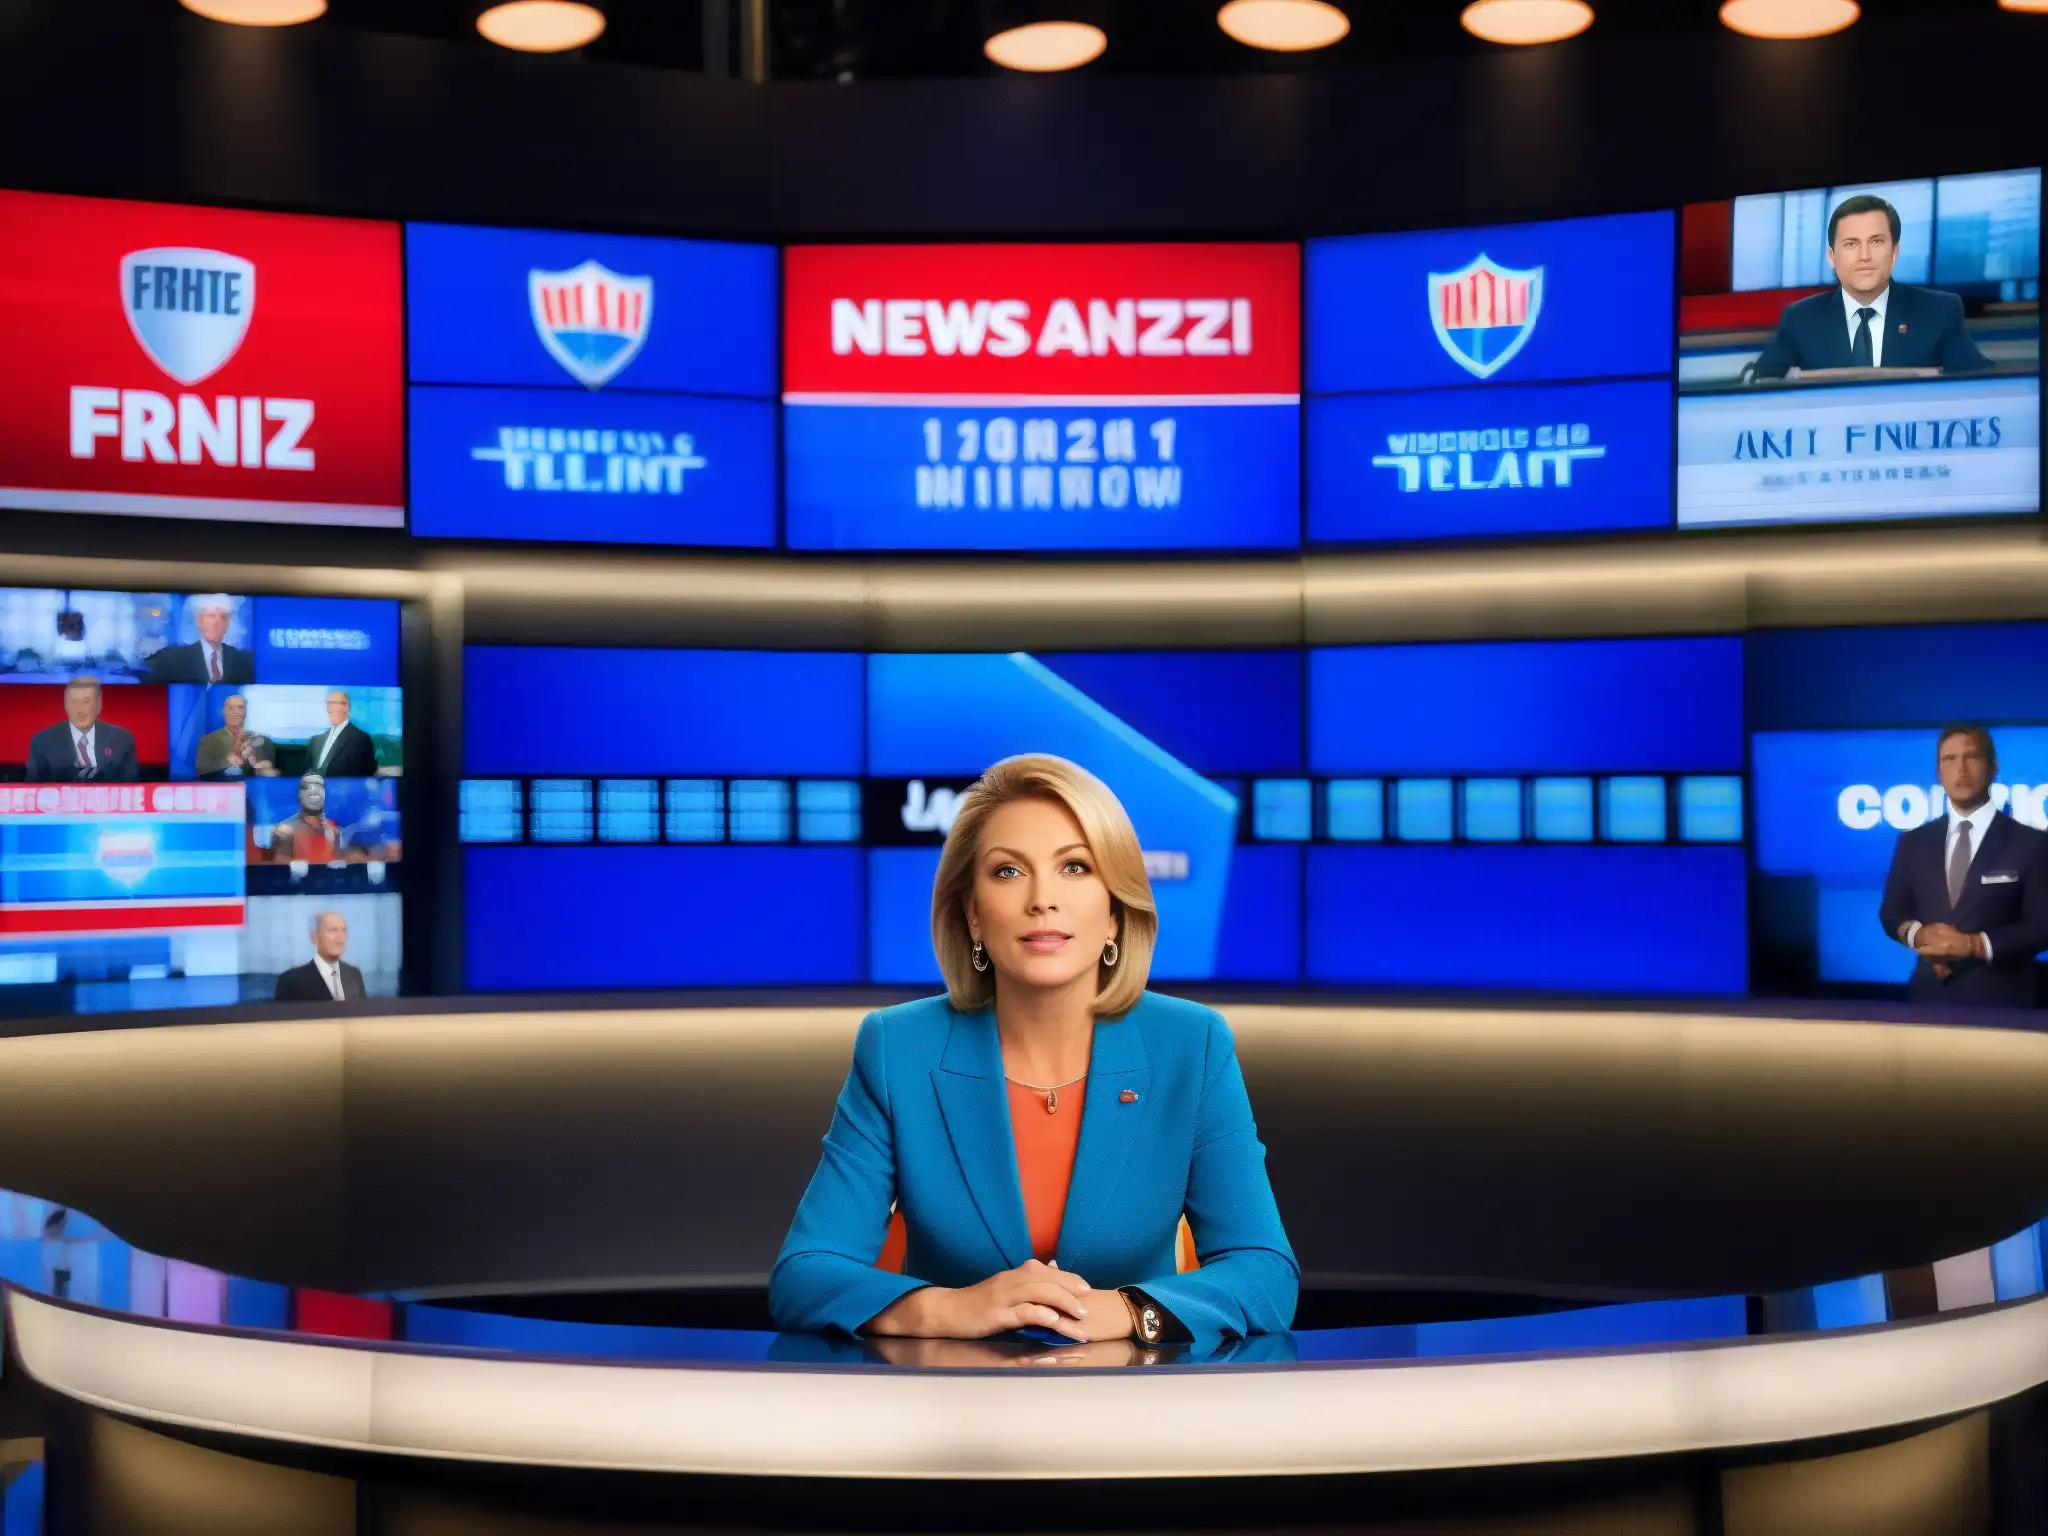 Un estudio de televisión con un presentador de noticias serio informando sobre una noticia de última hora